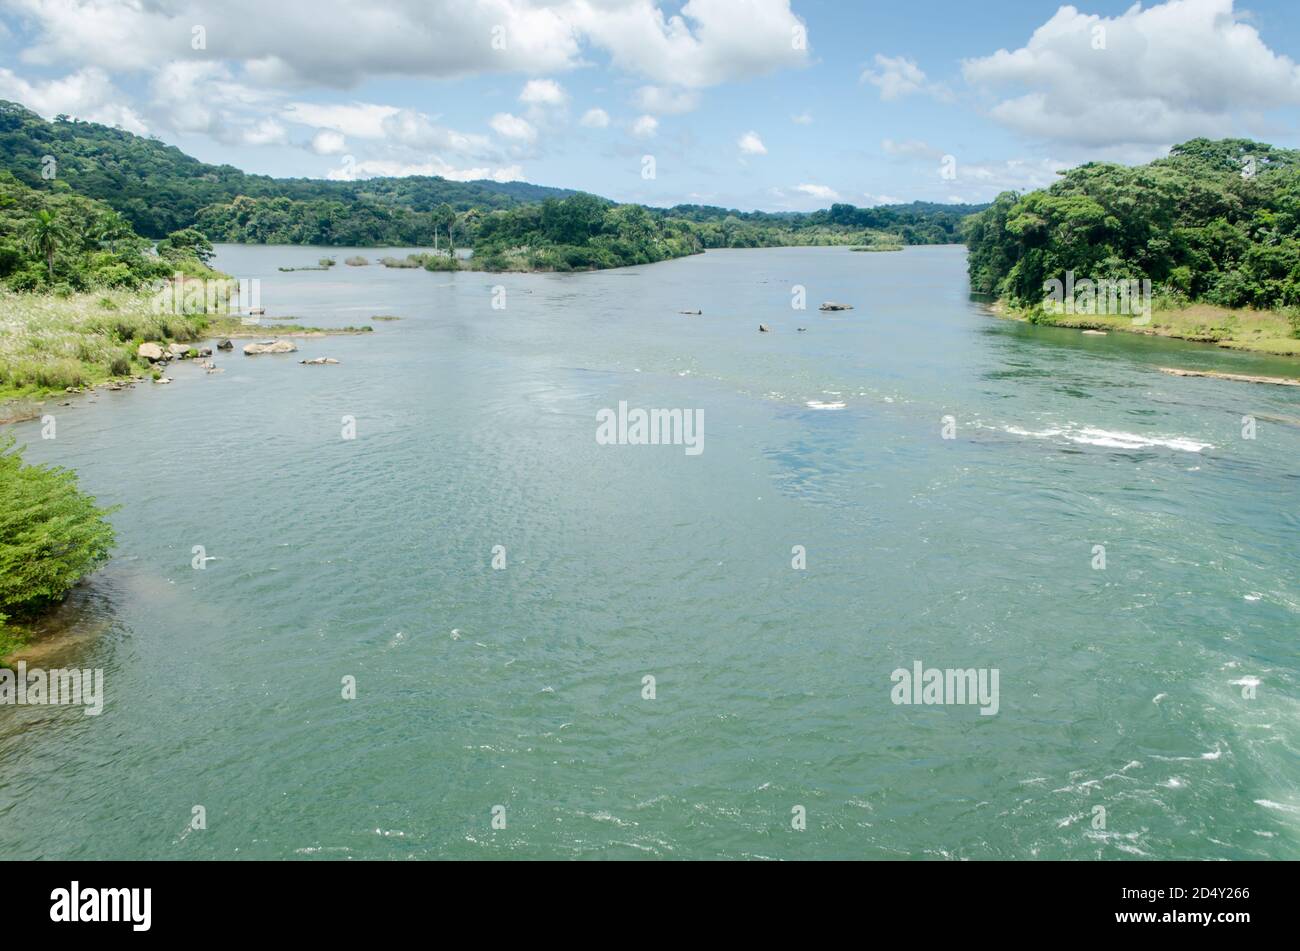 El río Chagres en Panamá es crucial, conocido por su importancia histórica y ecológica, y su papel en la gestión del agua para el Canal de Panamá. Foto de stock